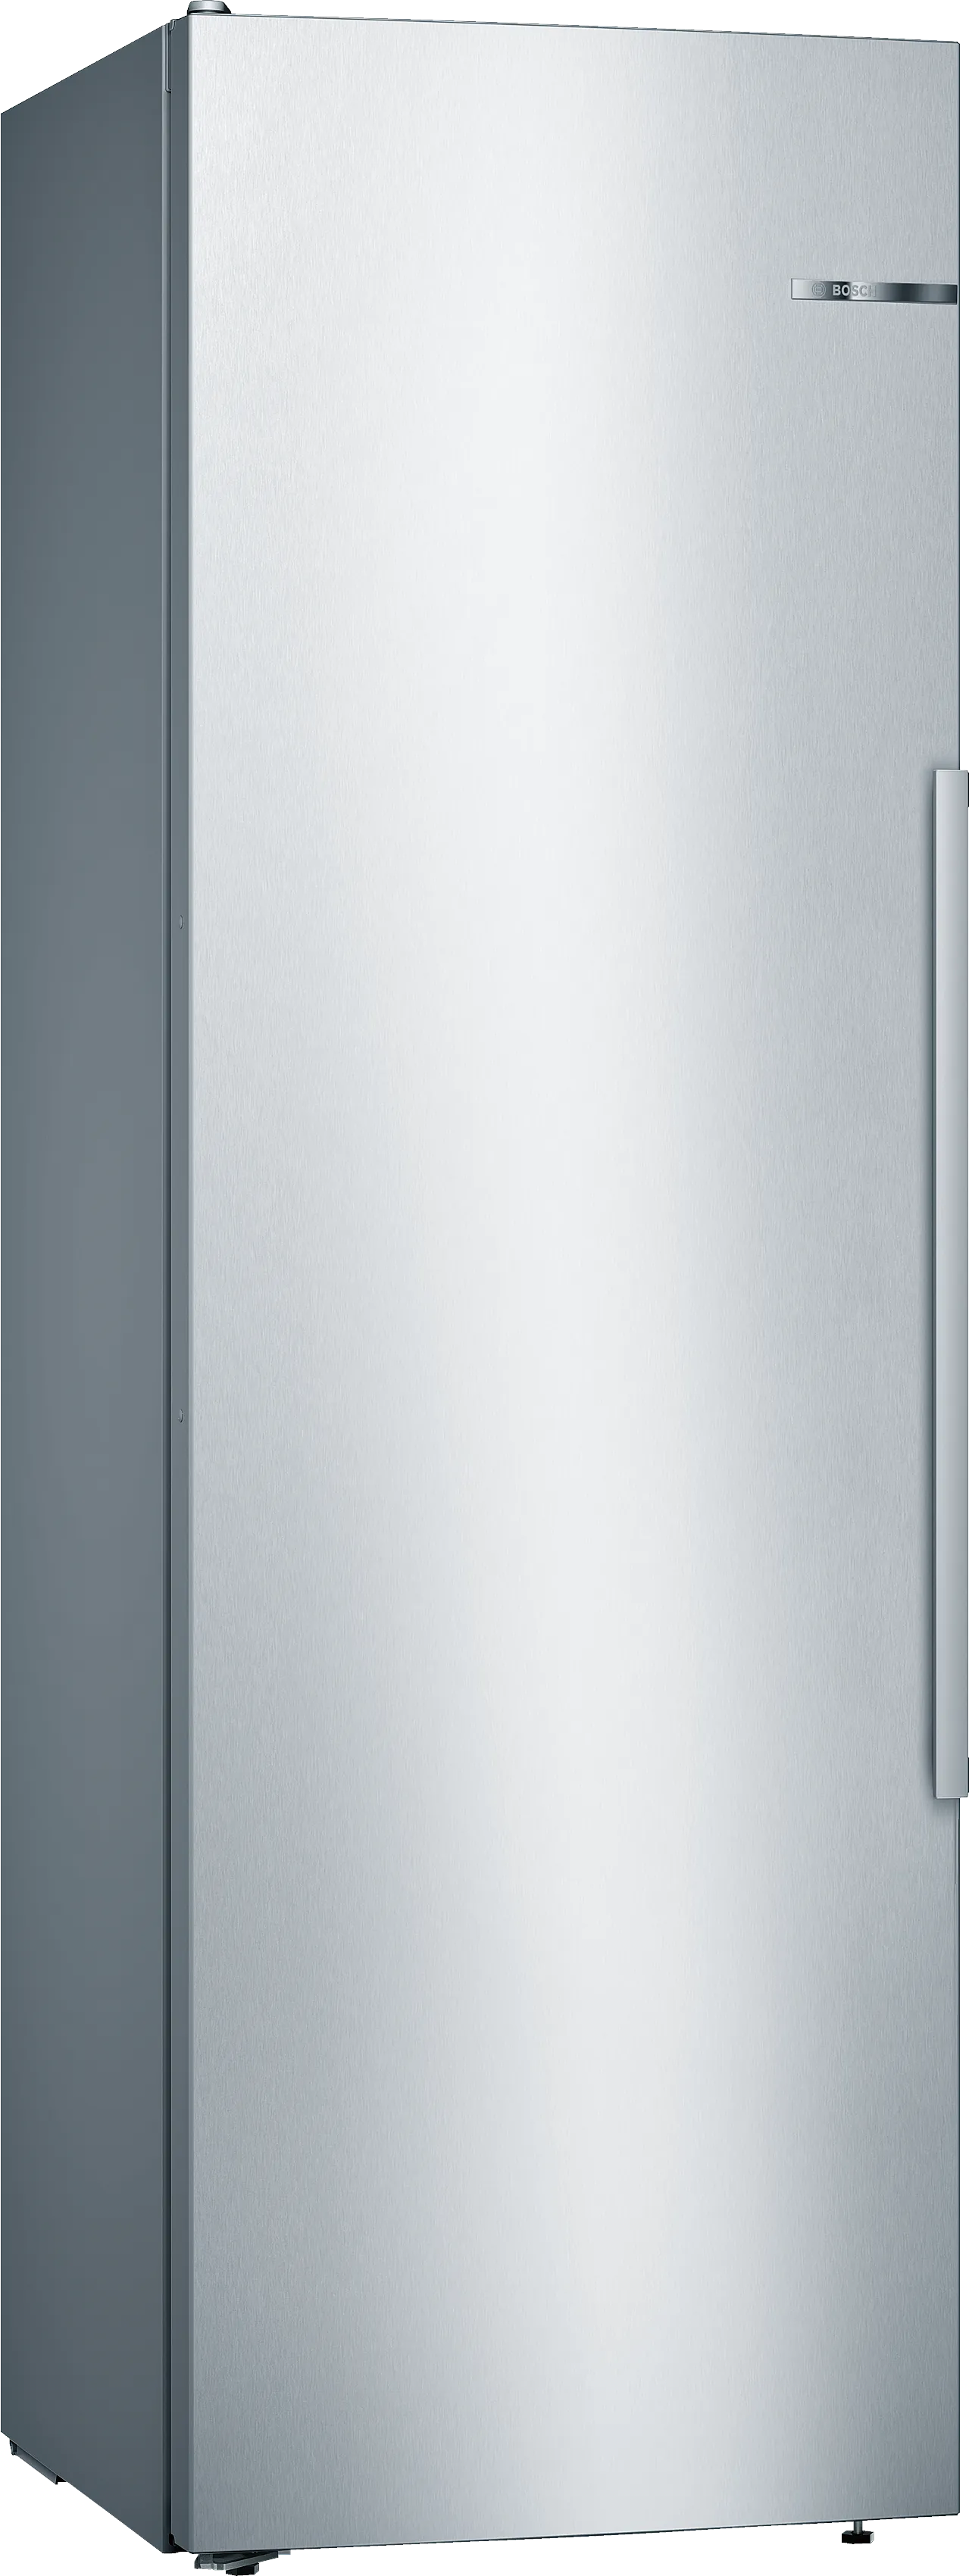 Serie 6 Freistehender Kühlschrank 186 x 60 cm Edelstahl (mit Antifingerprint) 